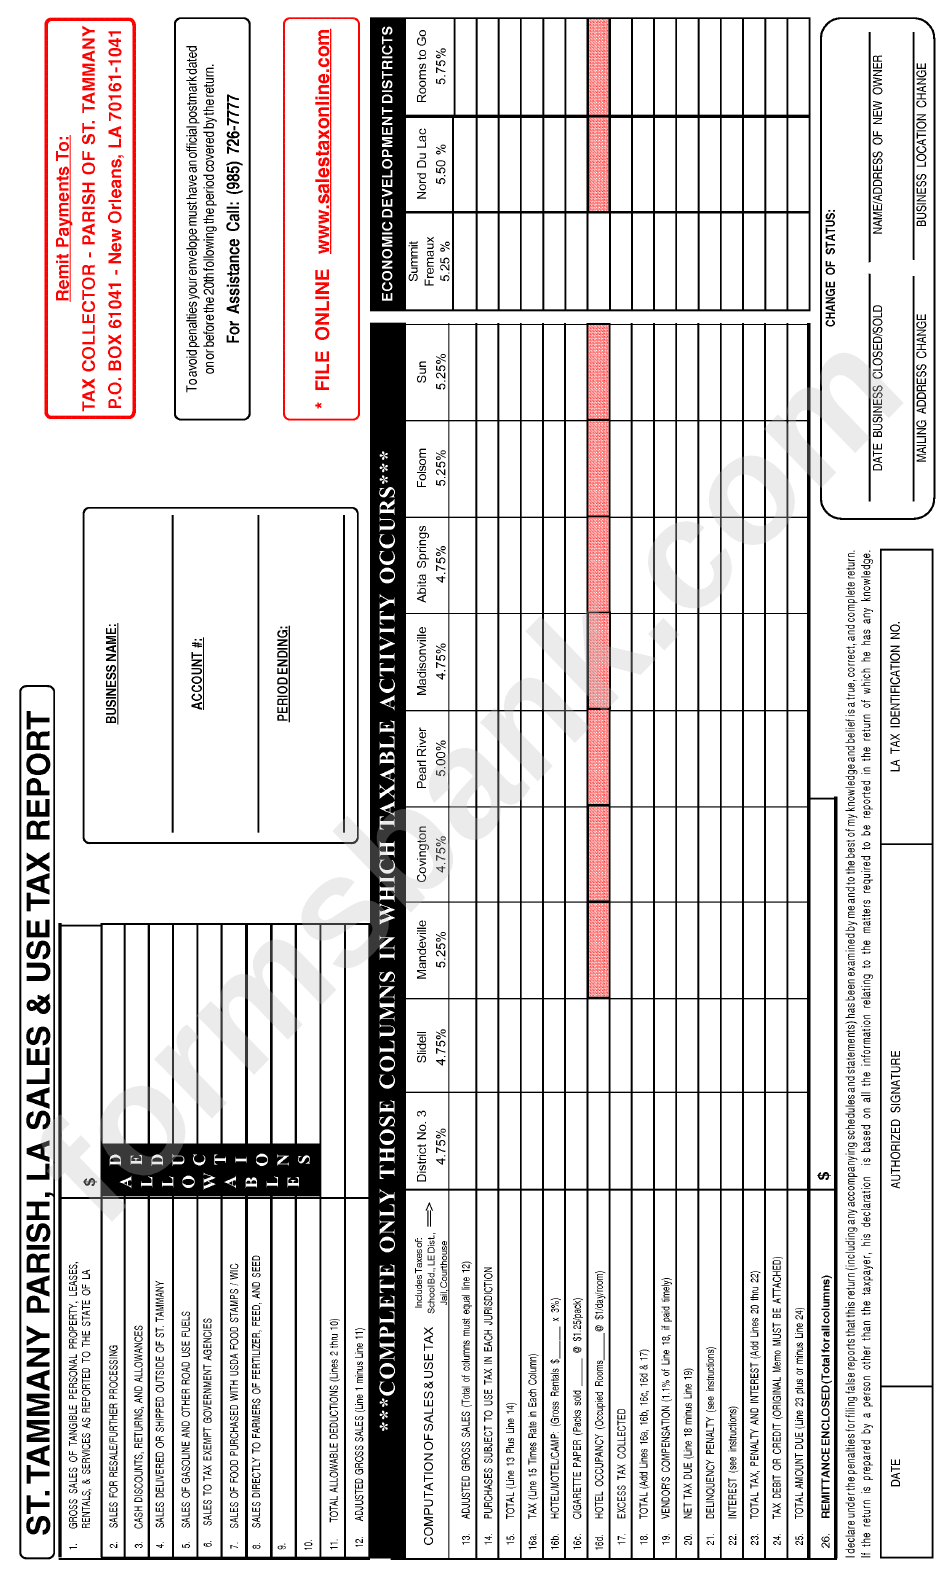 St. Tammany Parish, La Sales & Use Tax Report Form